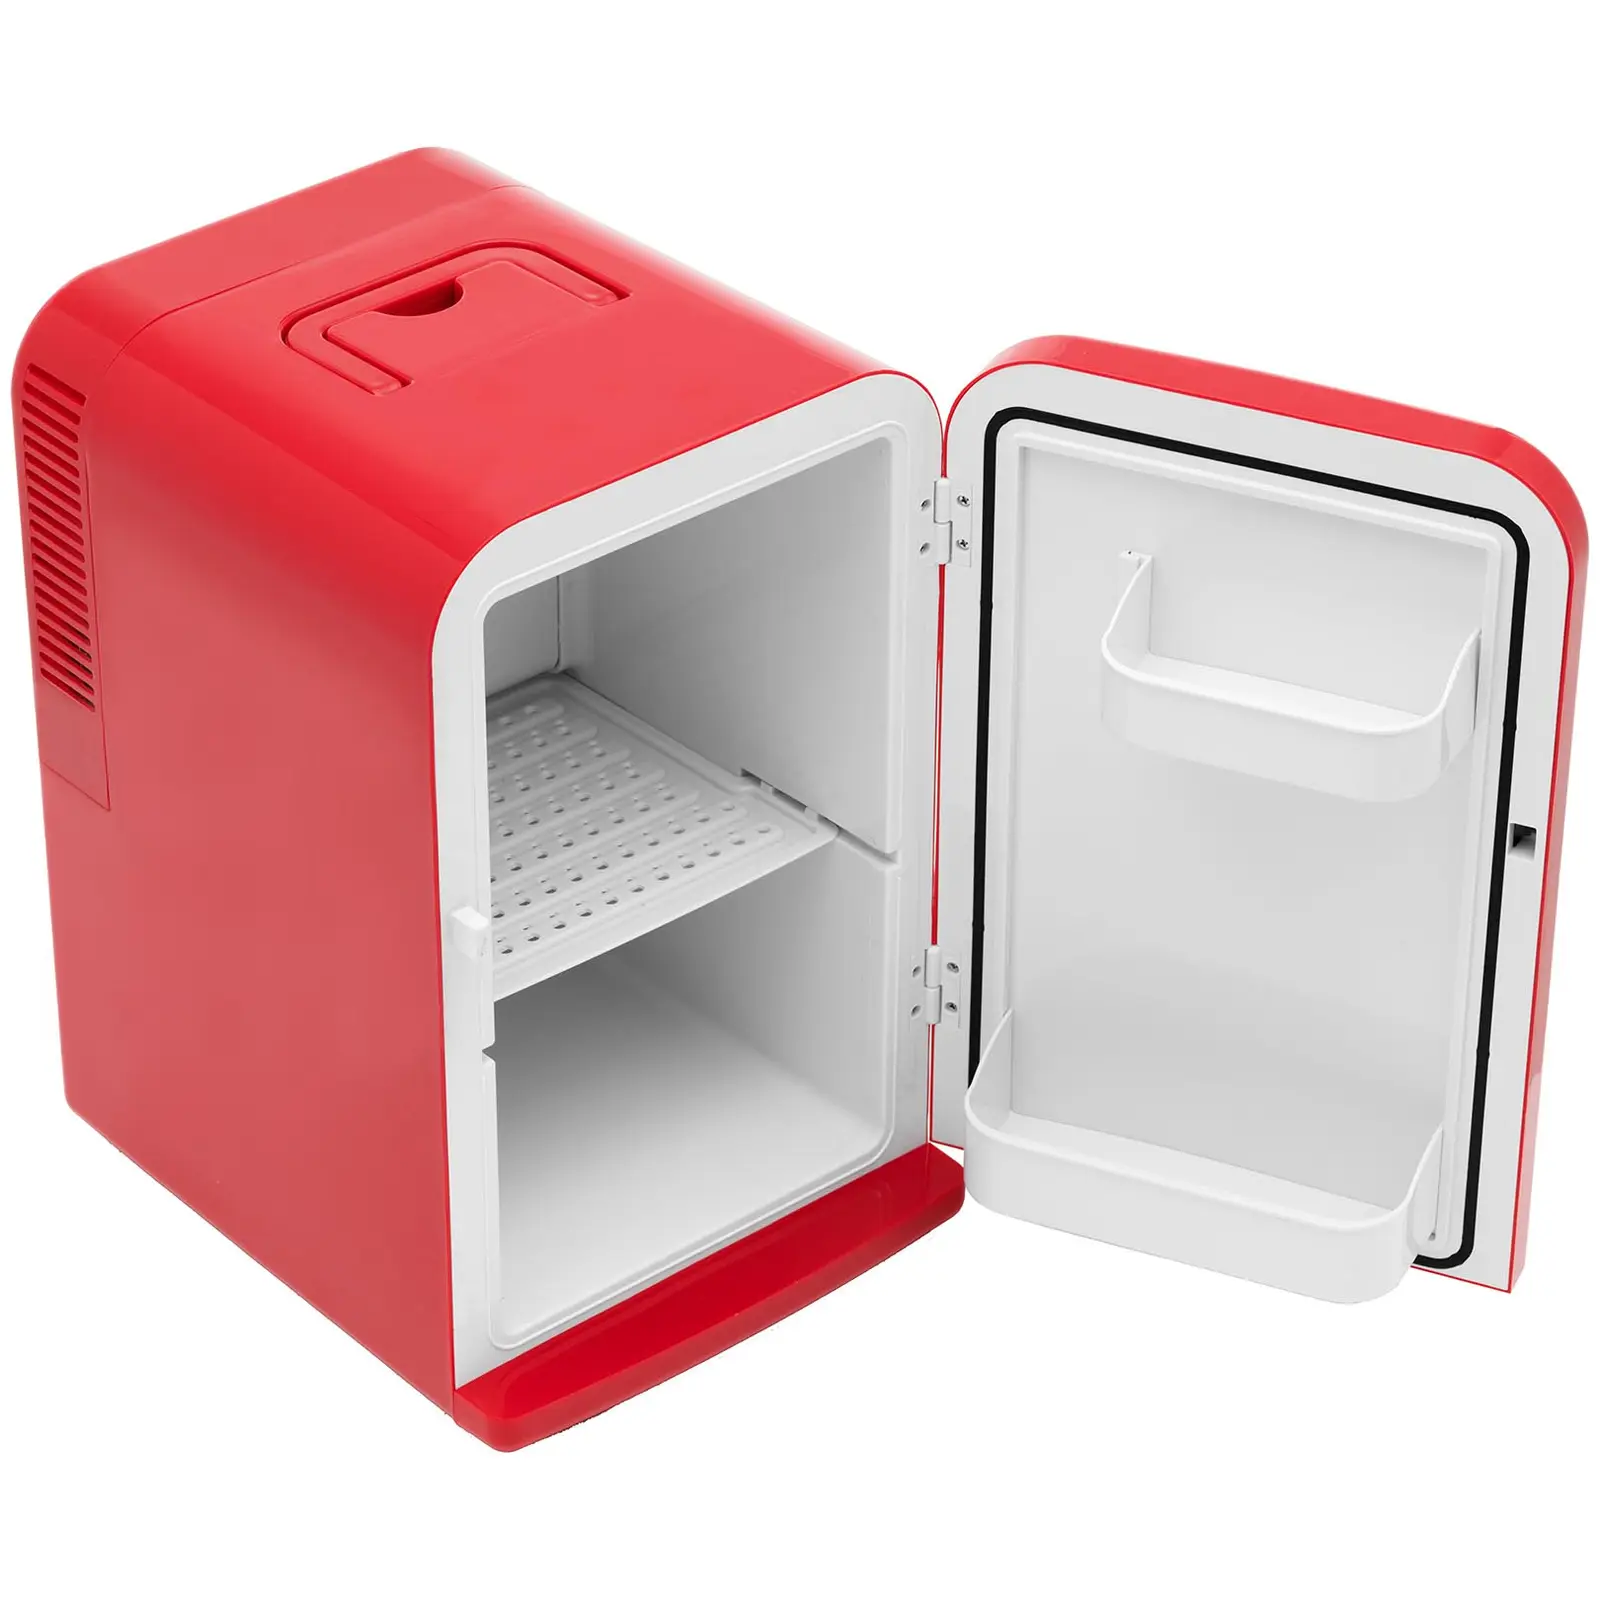 Мини хладилник 12 V / 230 V - уред 2 в 1 с функция за поддържане на топлината - 15 L - Червен